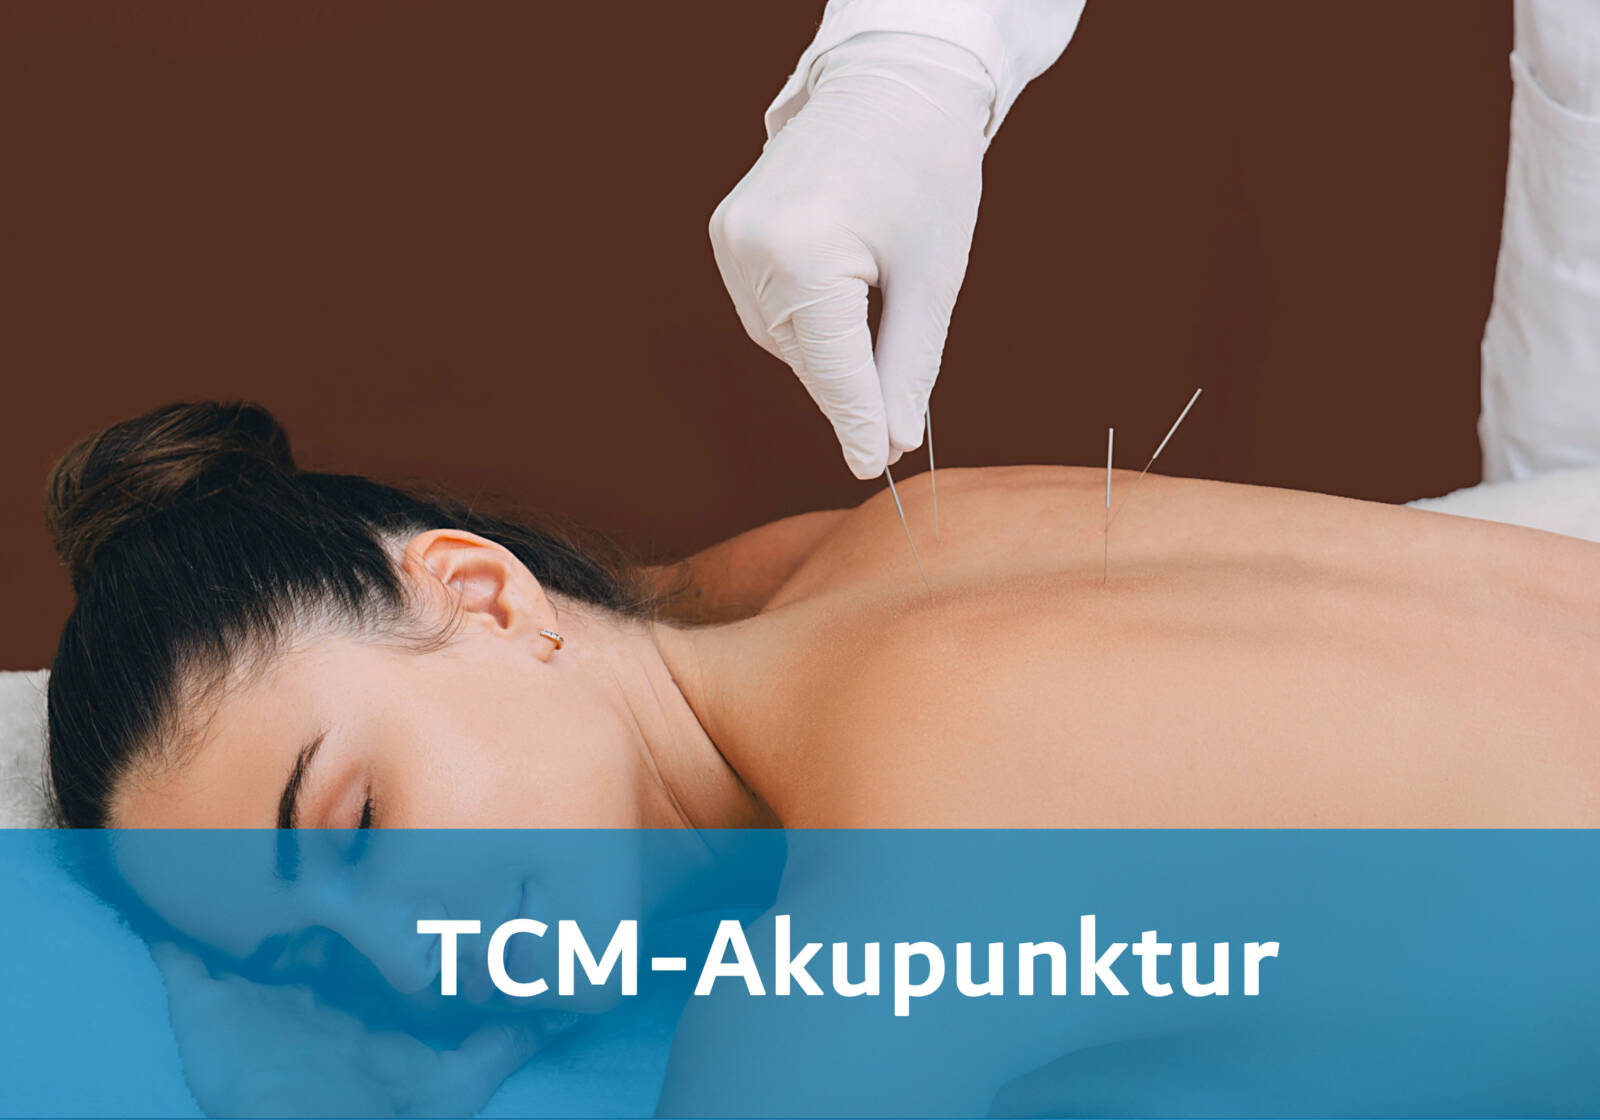 Erleben Sie die harmonisierende Wirkung der TCM-Akupunktur in unserer Praxis für ganzheitliche Gesundheit ✅ Jetzt buchen nahe Basel | Thera Torso